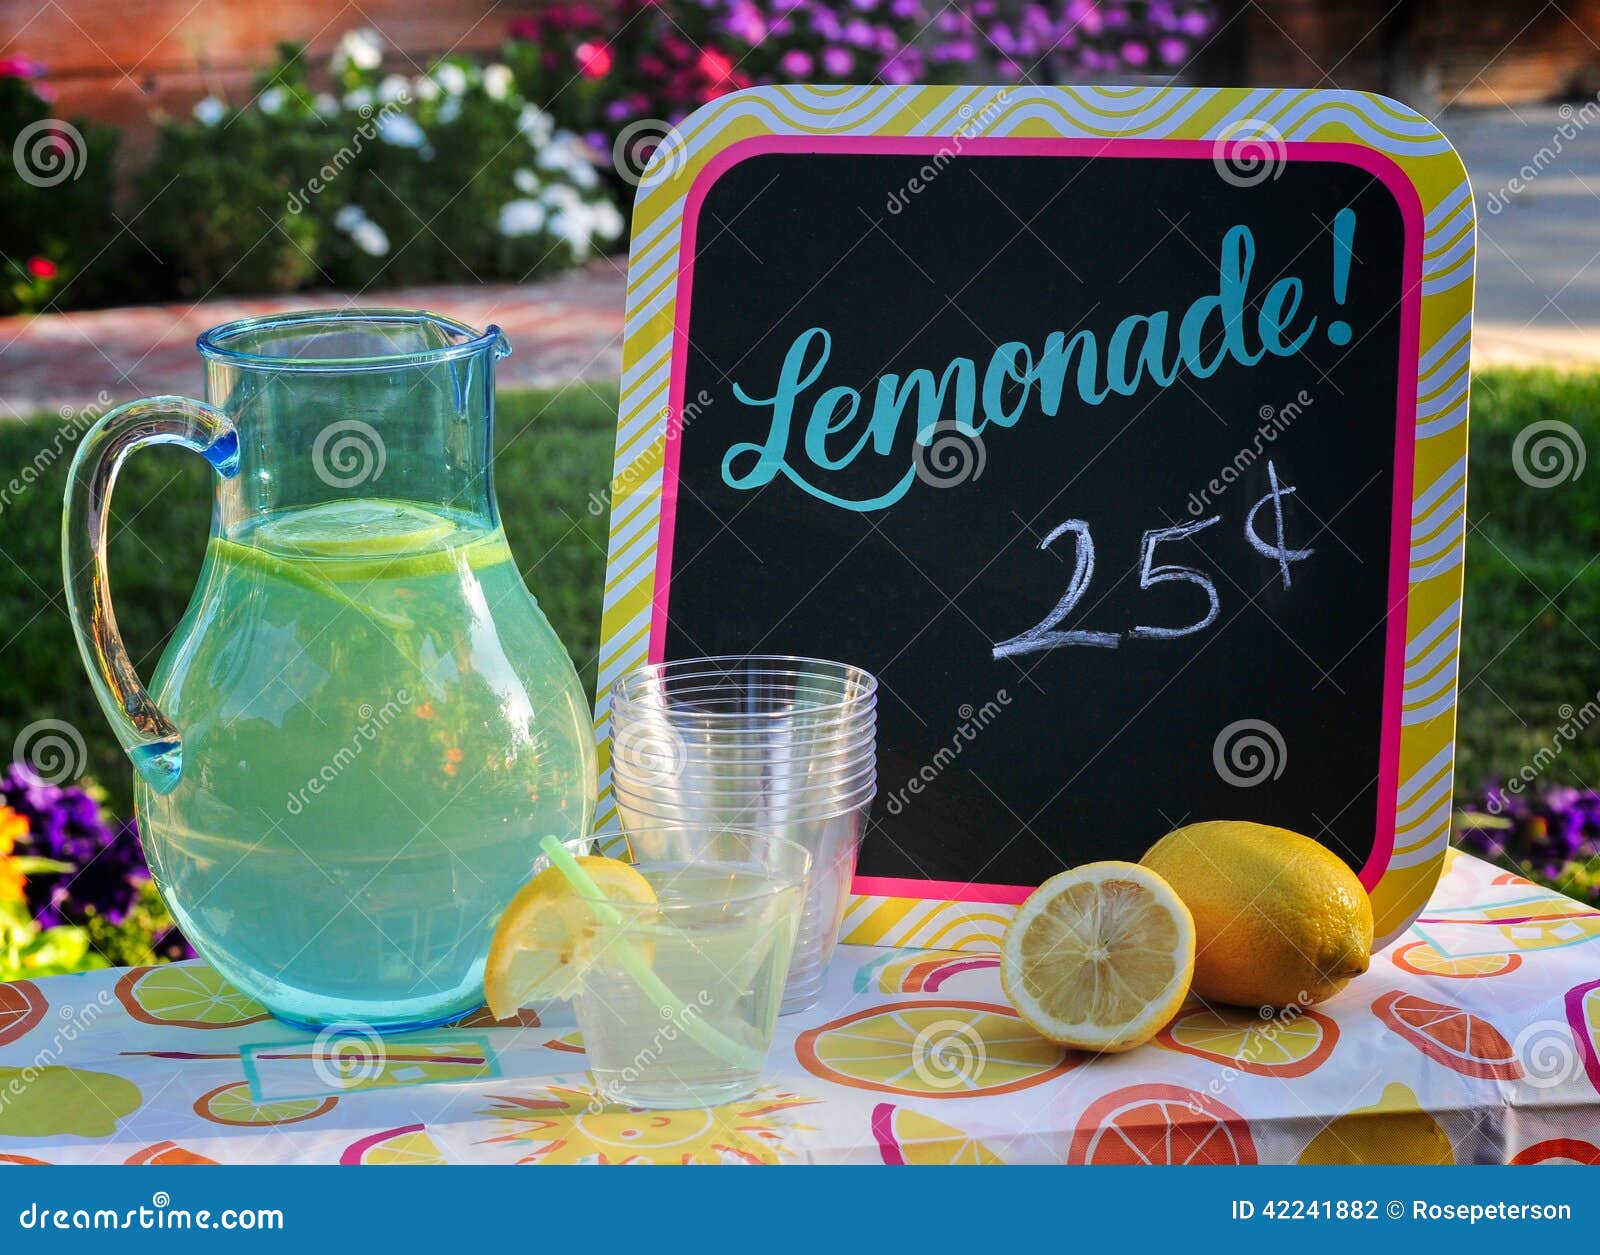 lemonade for sale